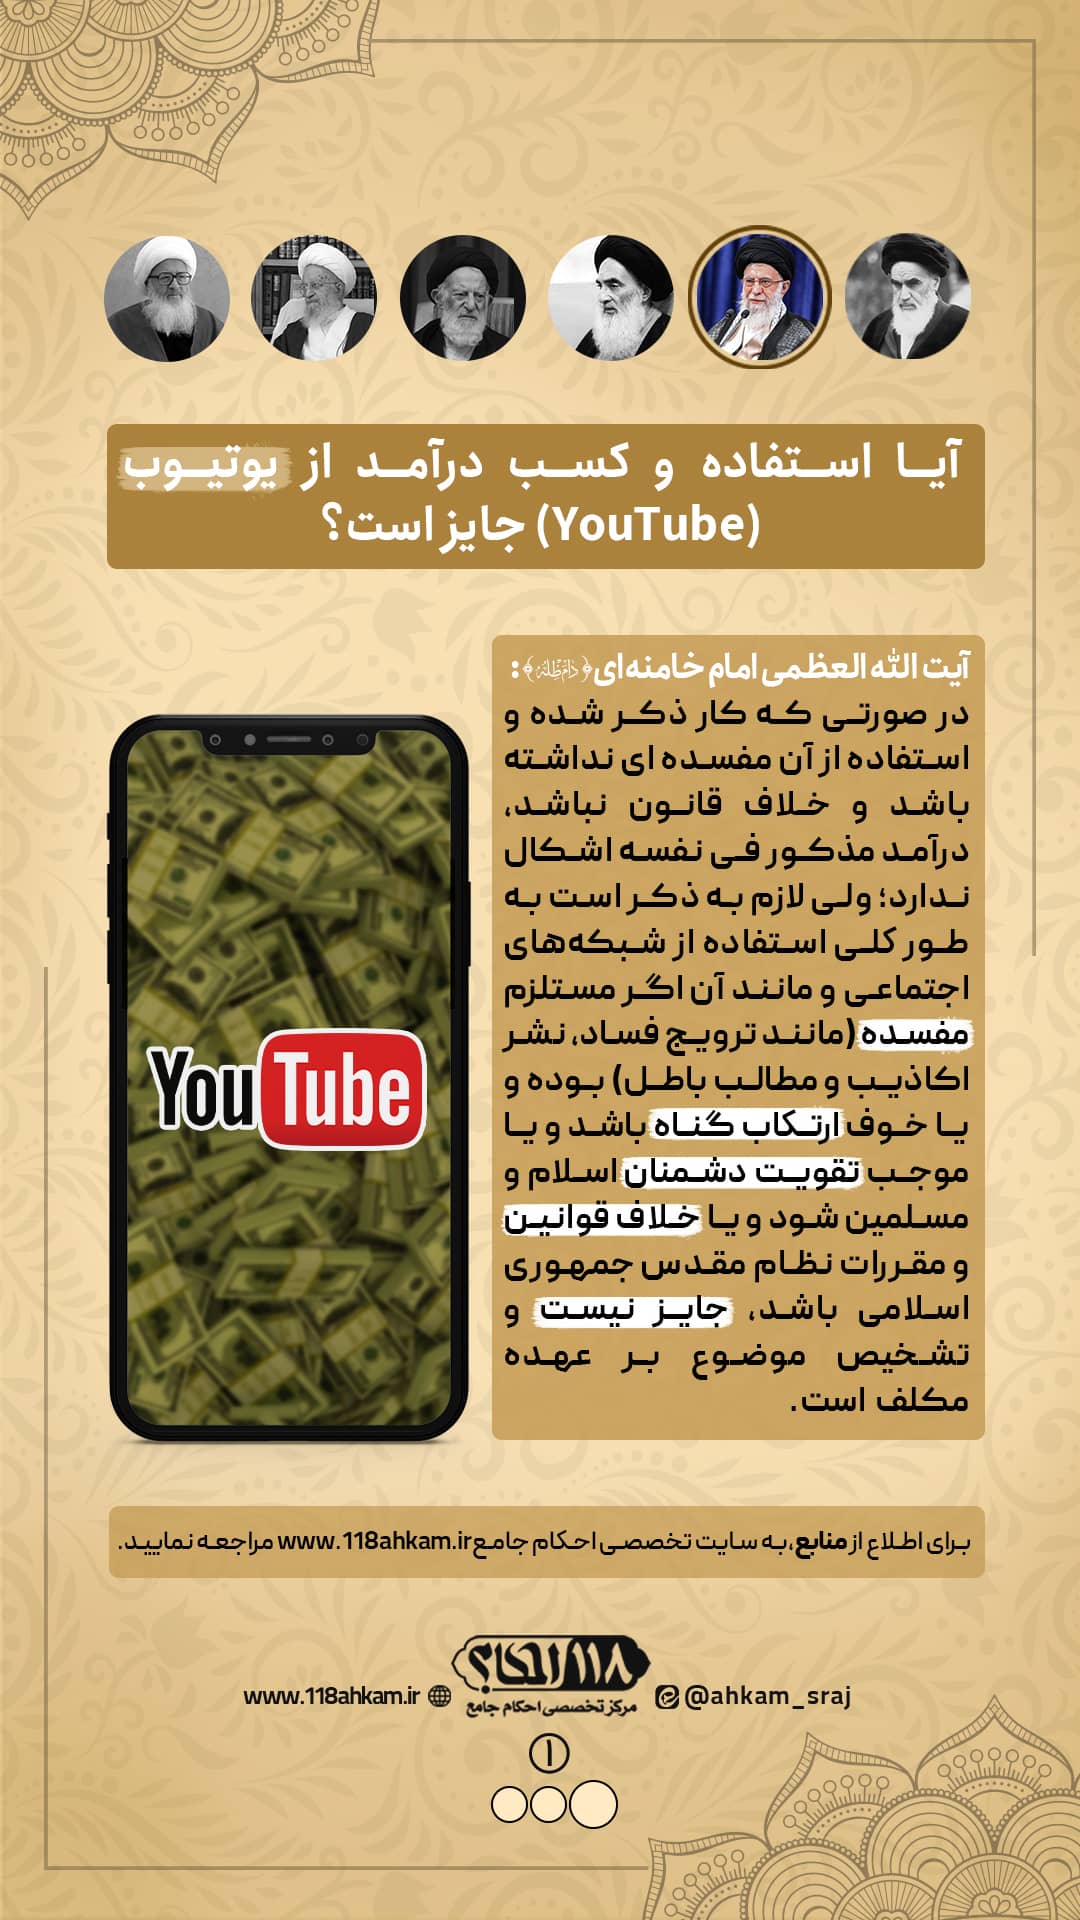 یوتیوب (YouTube)